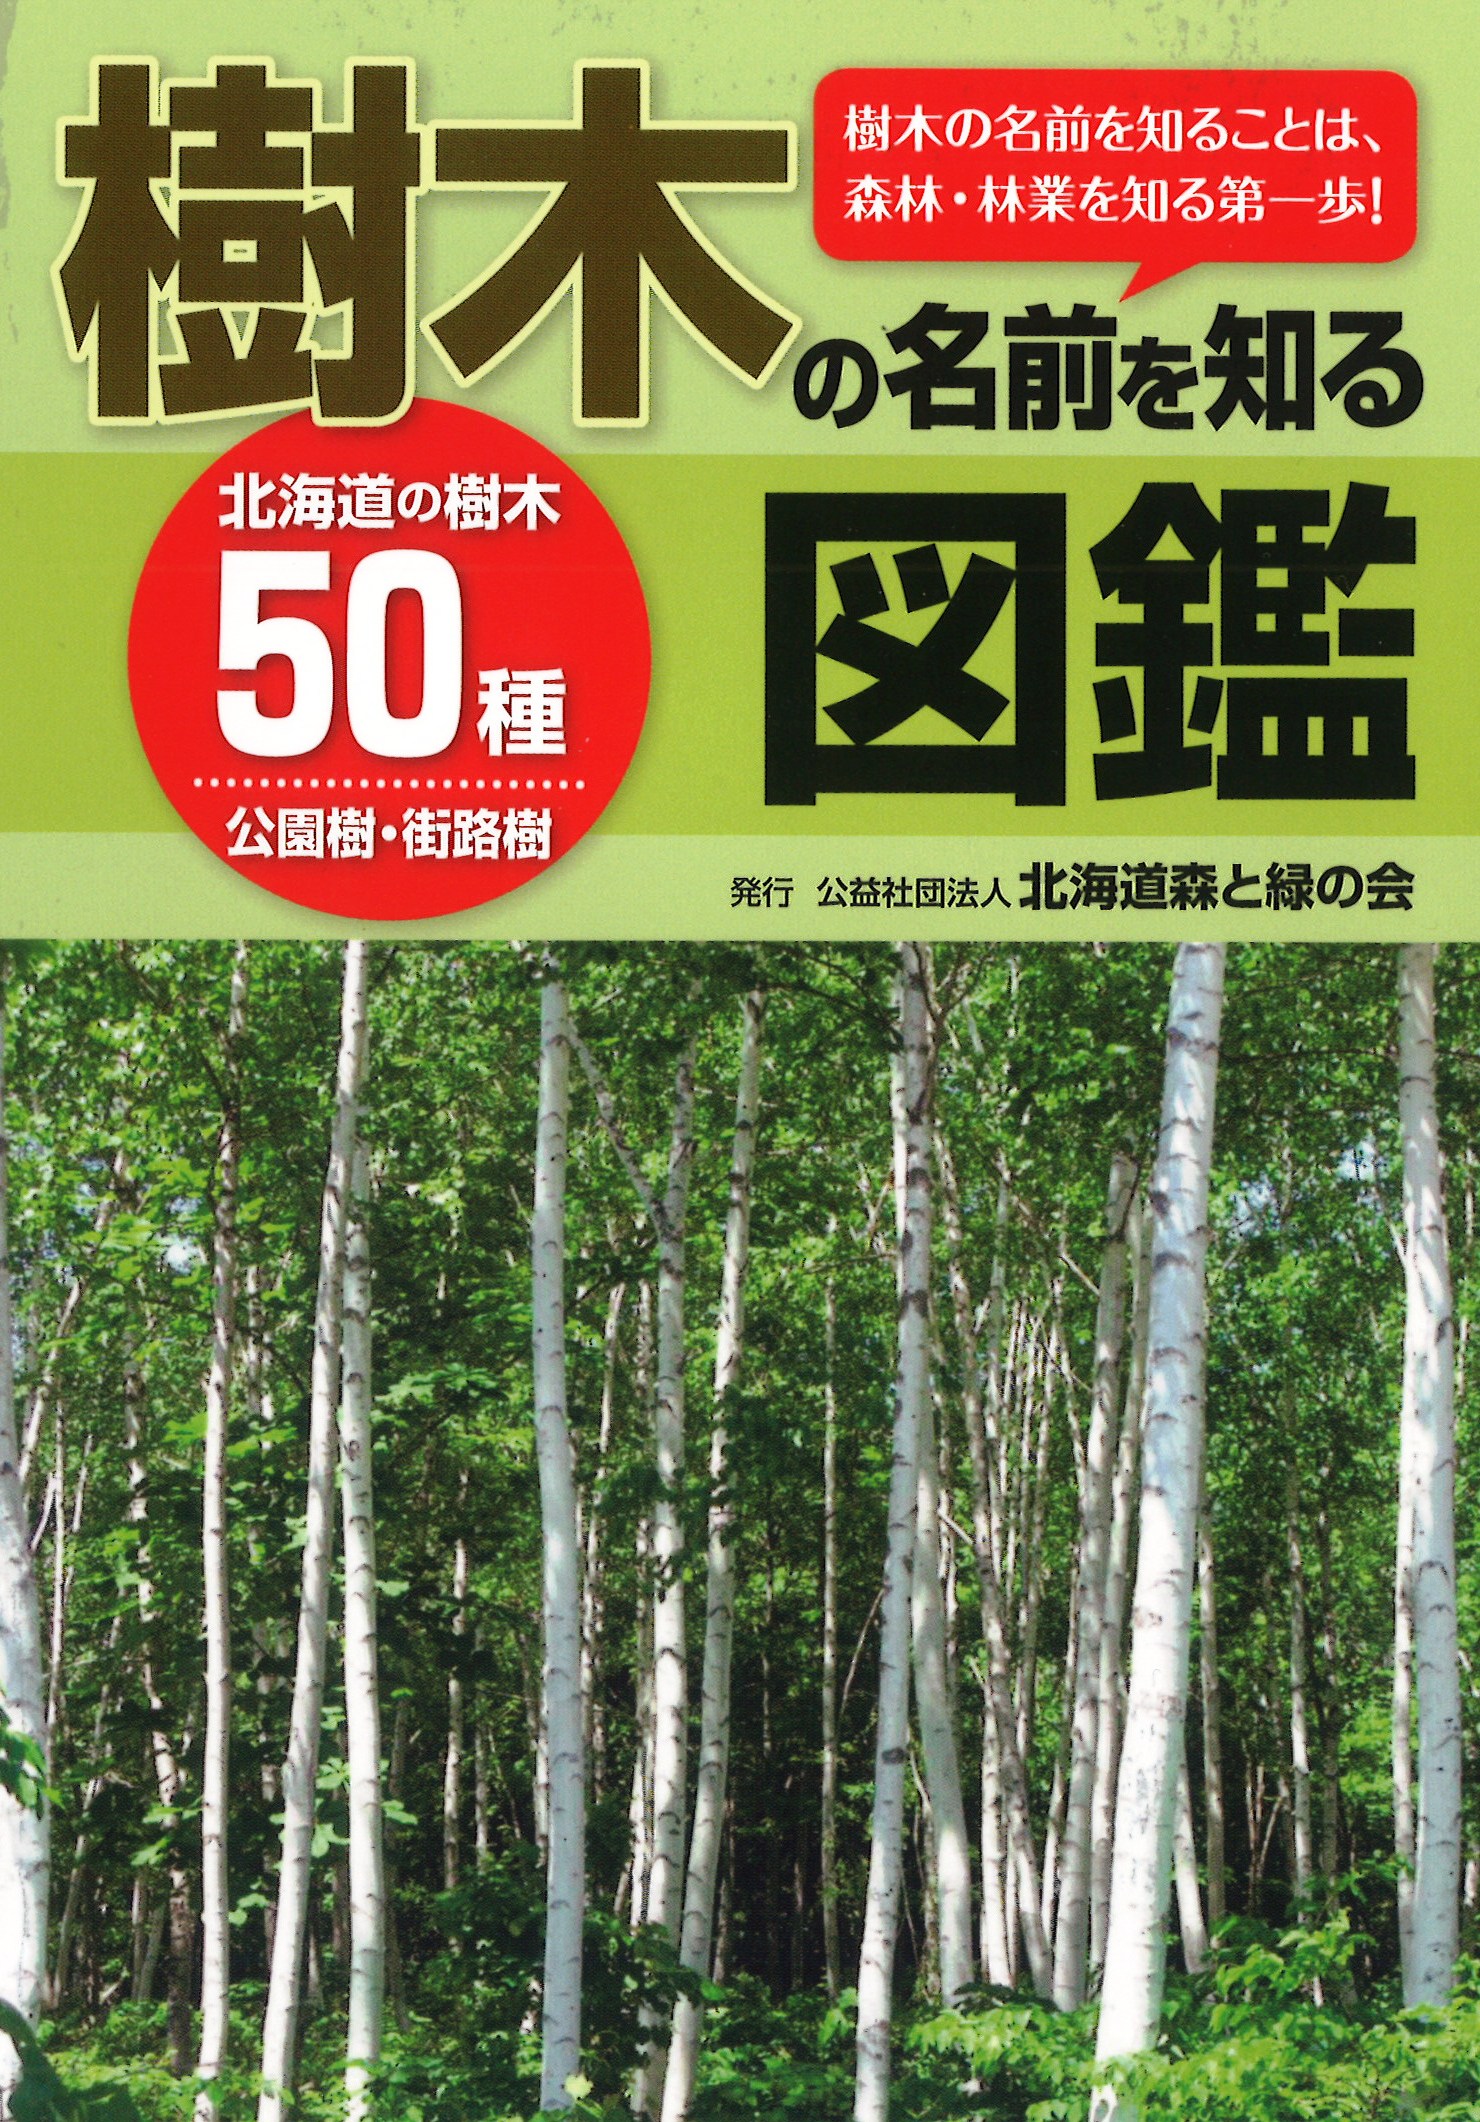 樹木の名前を知る図鑑 を発刊 大好評 北海道森と緑の会